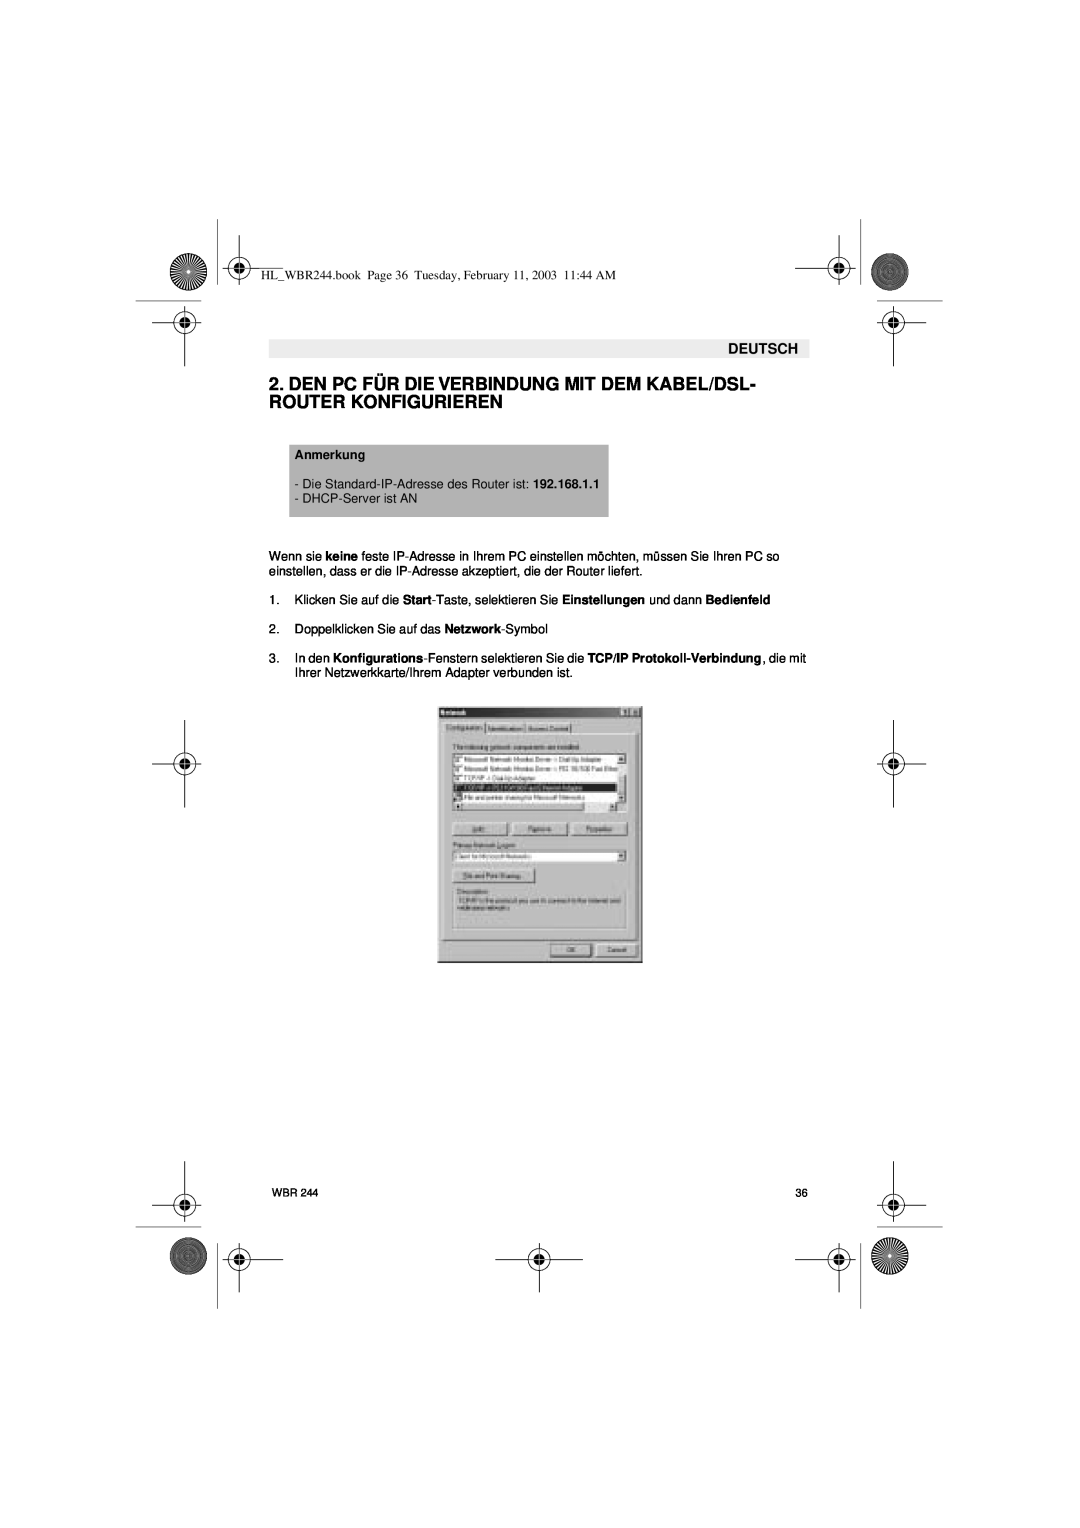 Topcom WBR 244 manual Den Pc Für Die Verbindung Mit Dem Kabel/Dsl- Router Konfigurieren, Anmerkung, Deutsch 